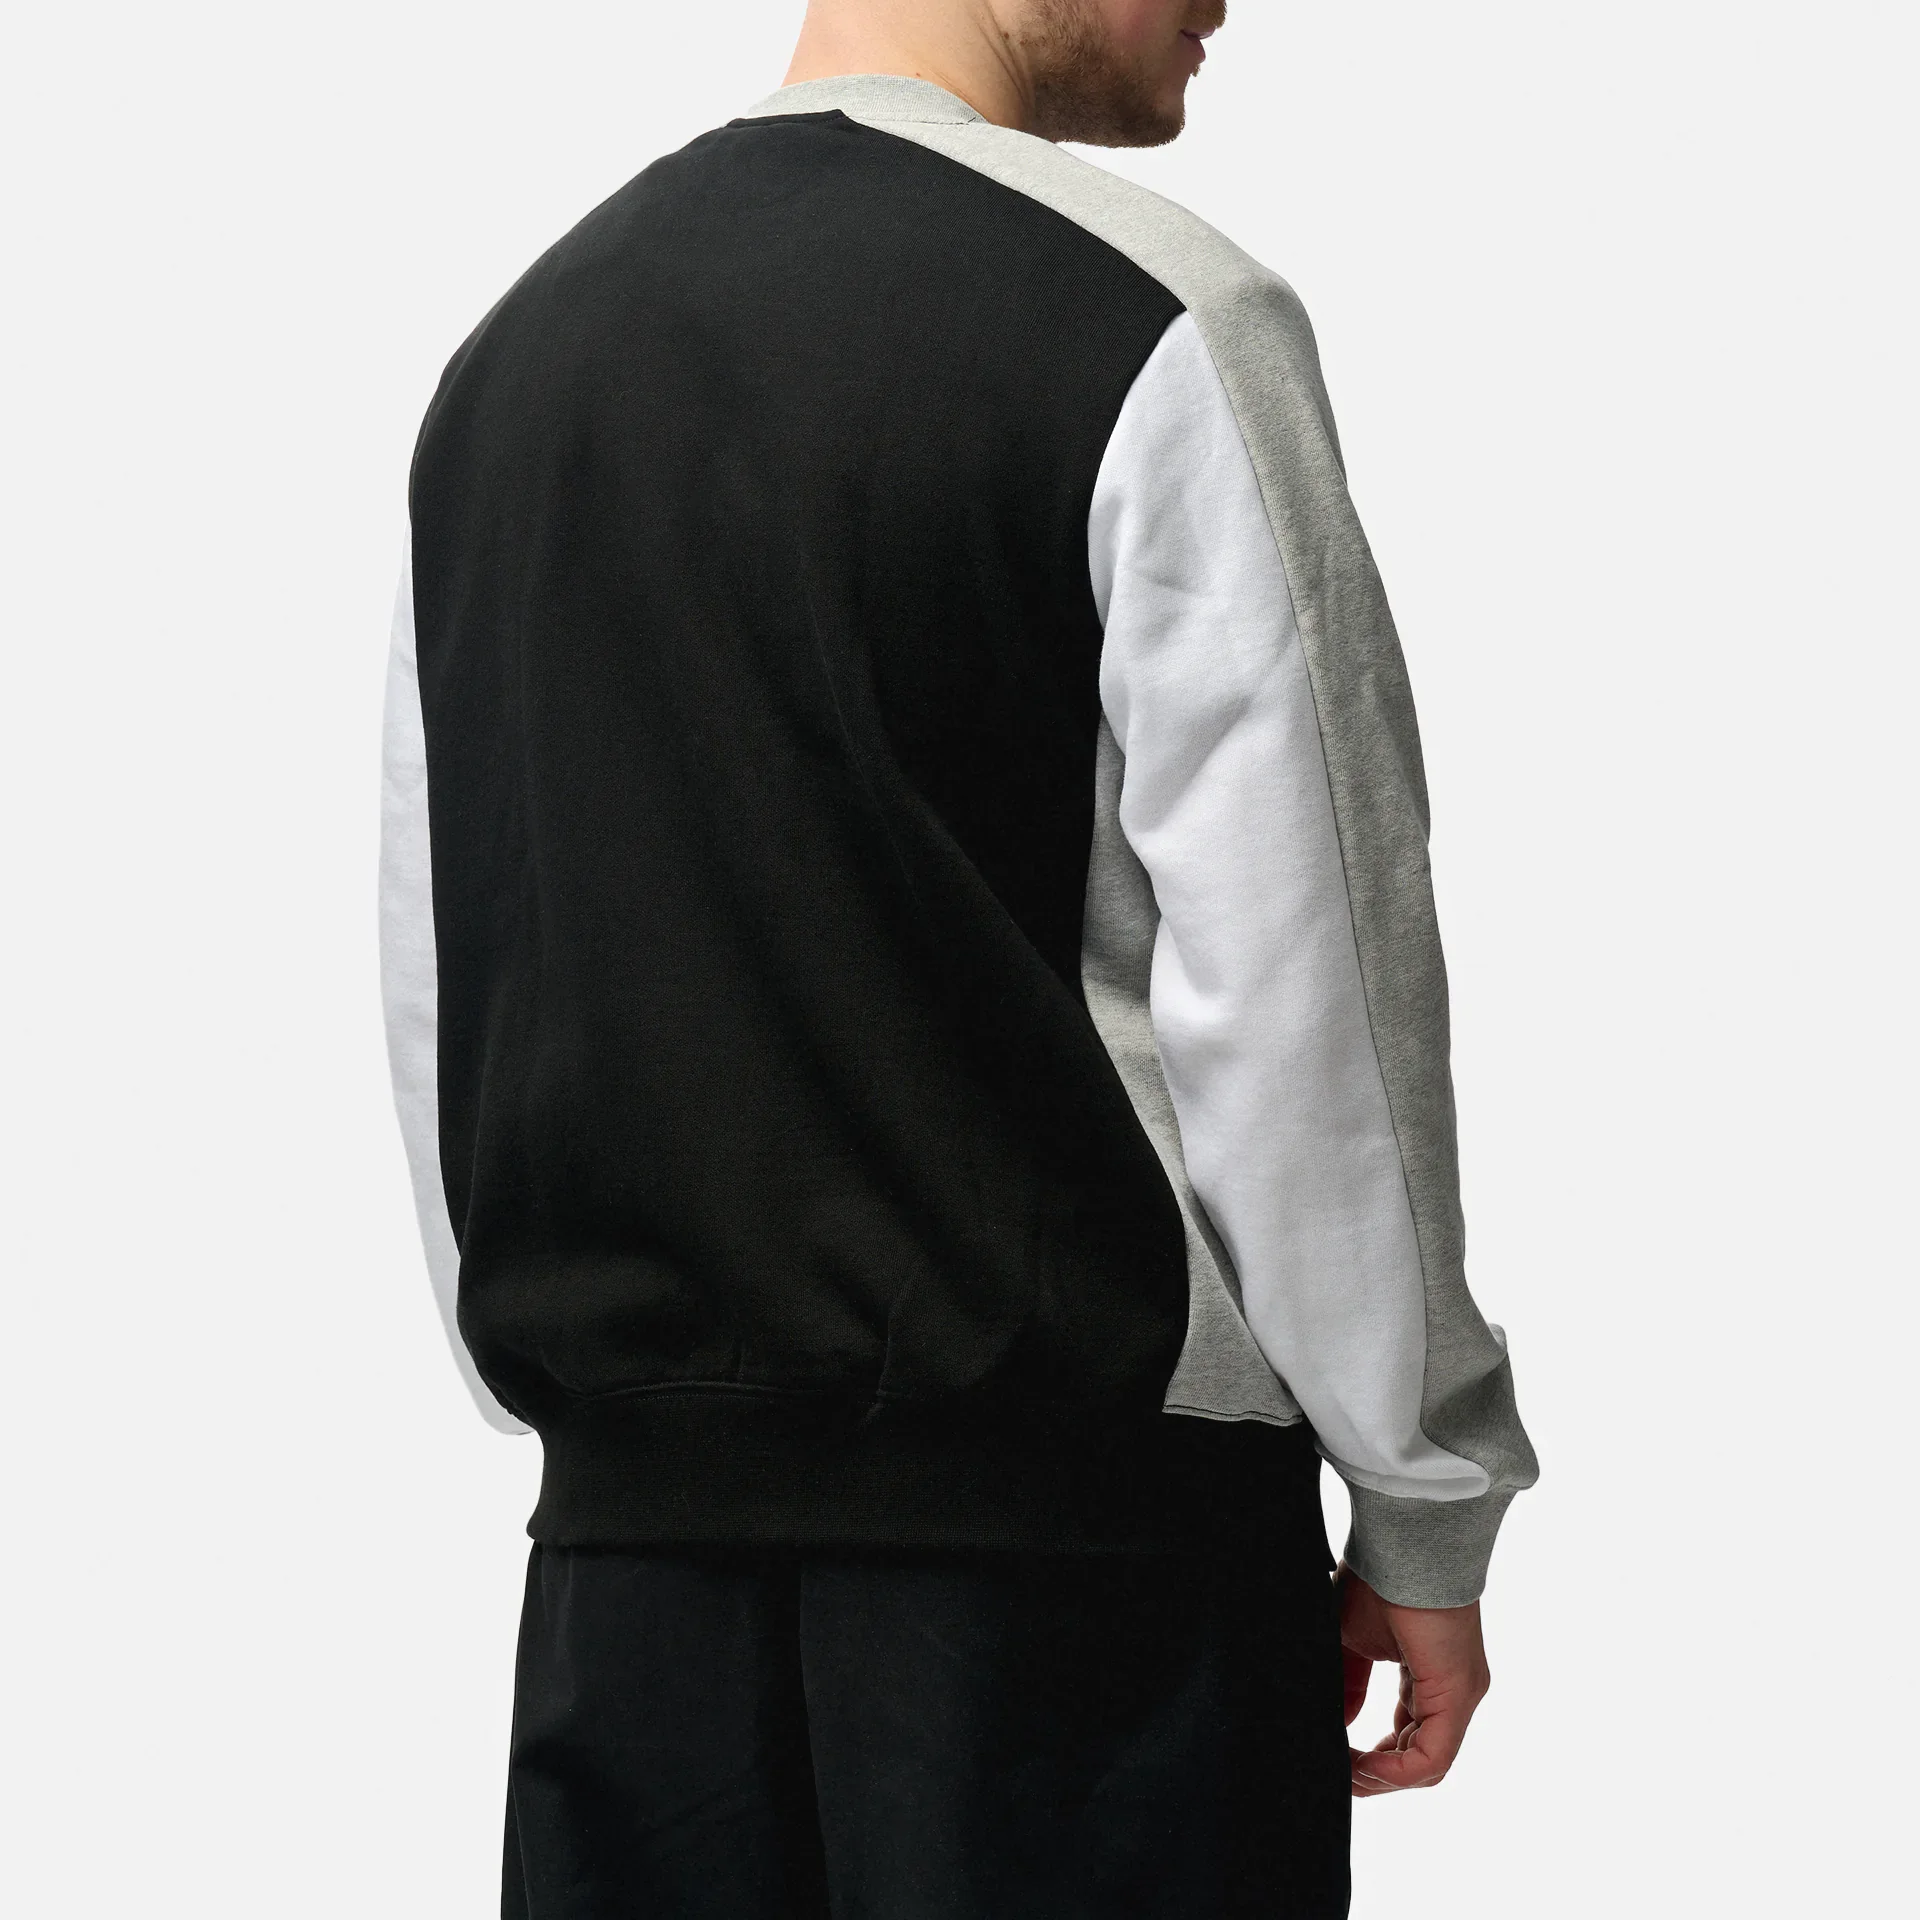 Lacoste Flannel Colorblock Pullover Black/Silver Chine/White